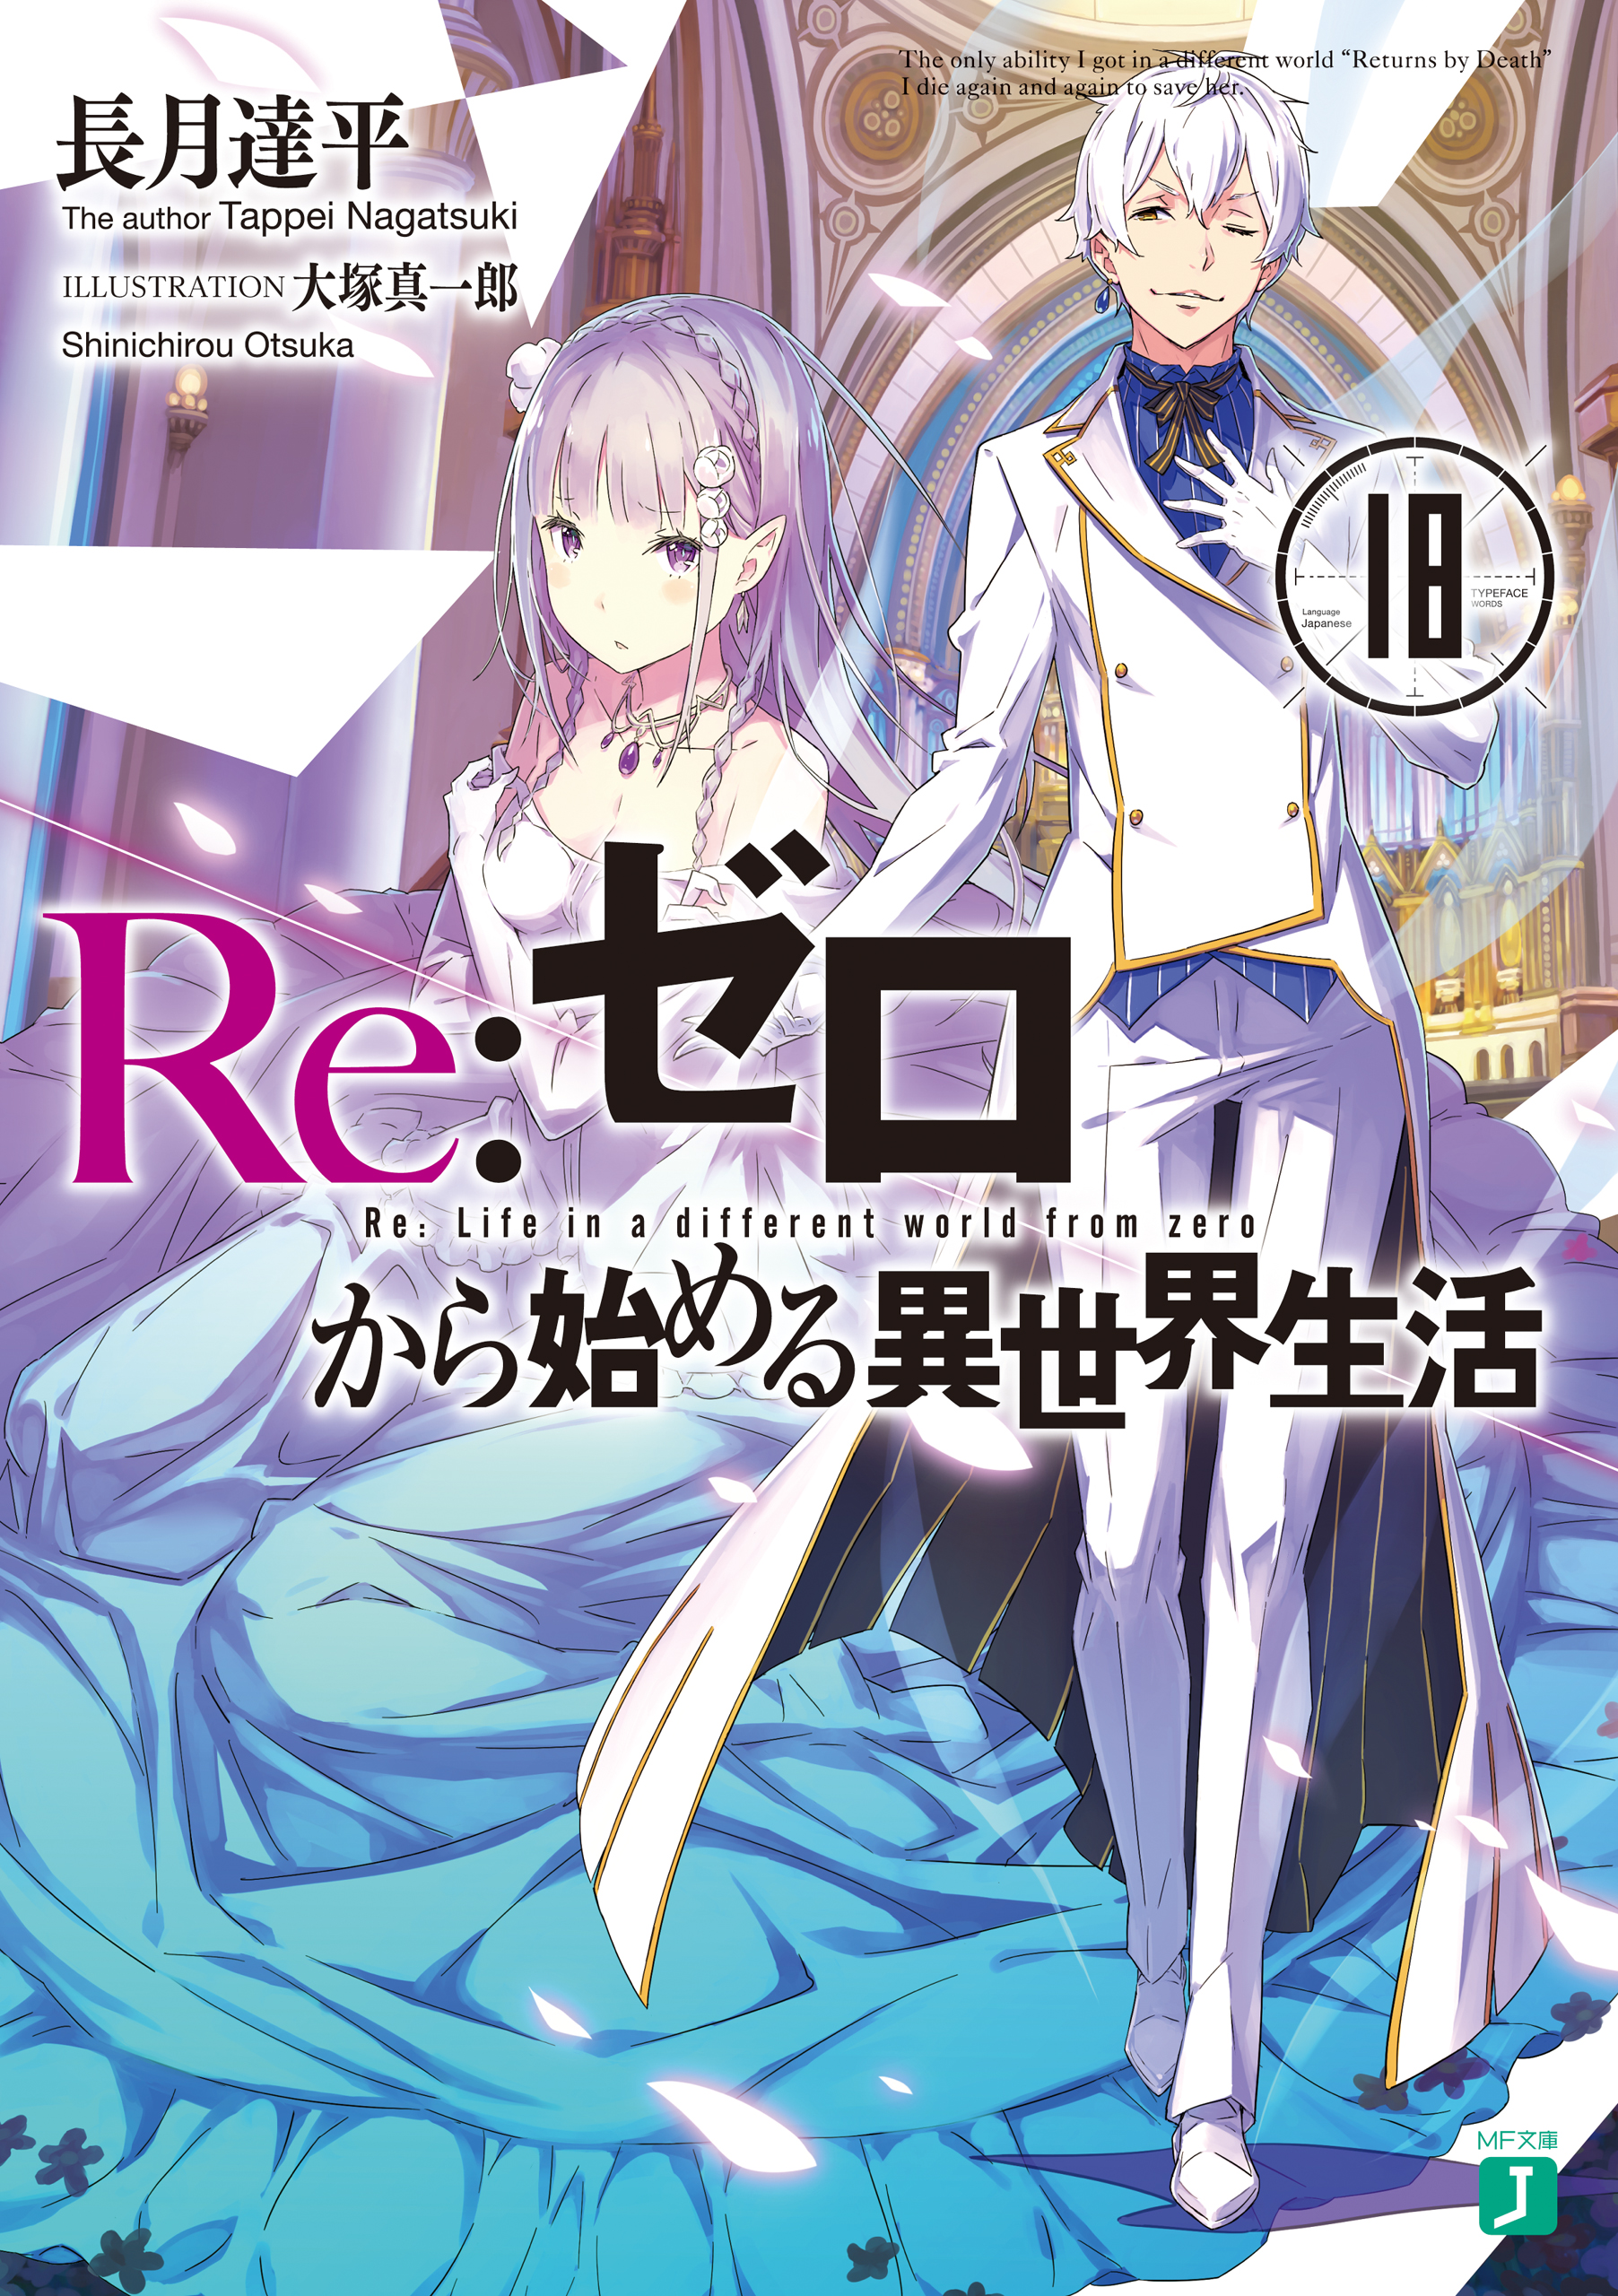 Re:Zero kara Hajimeru Isekai Seikatsu 2nd Season Episode 24